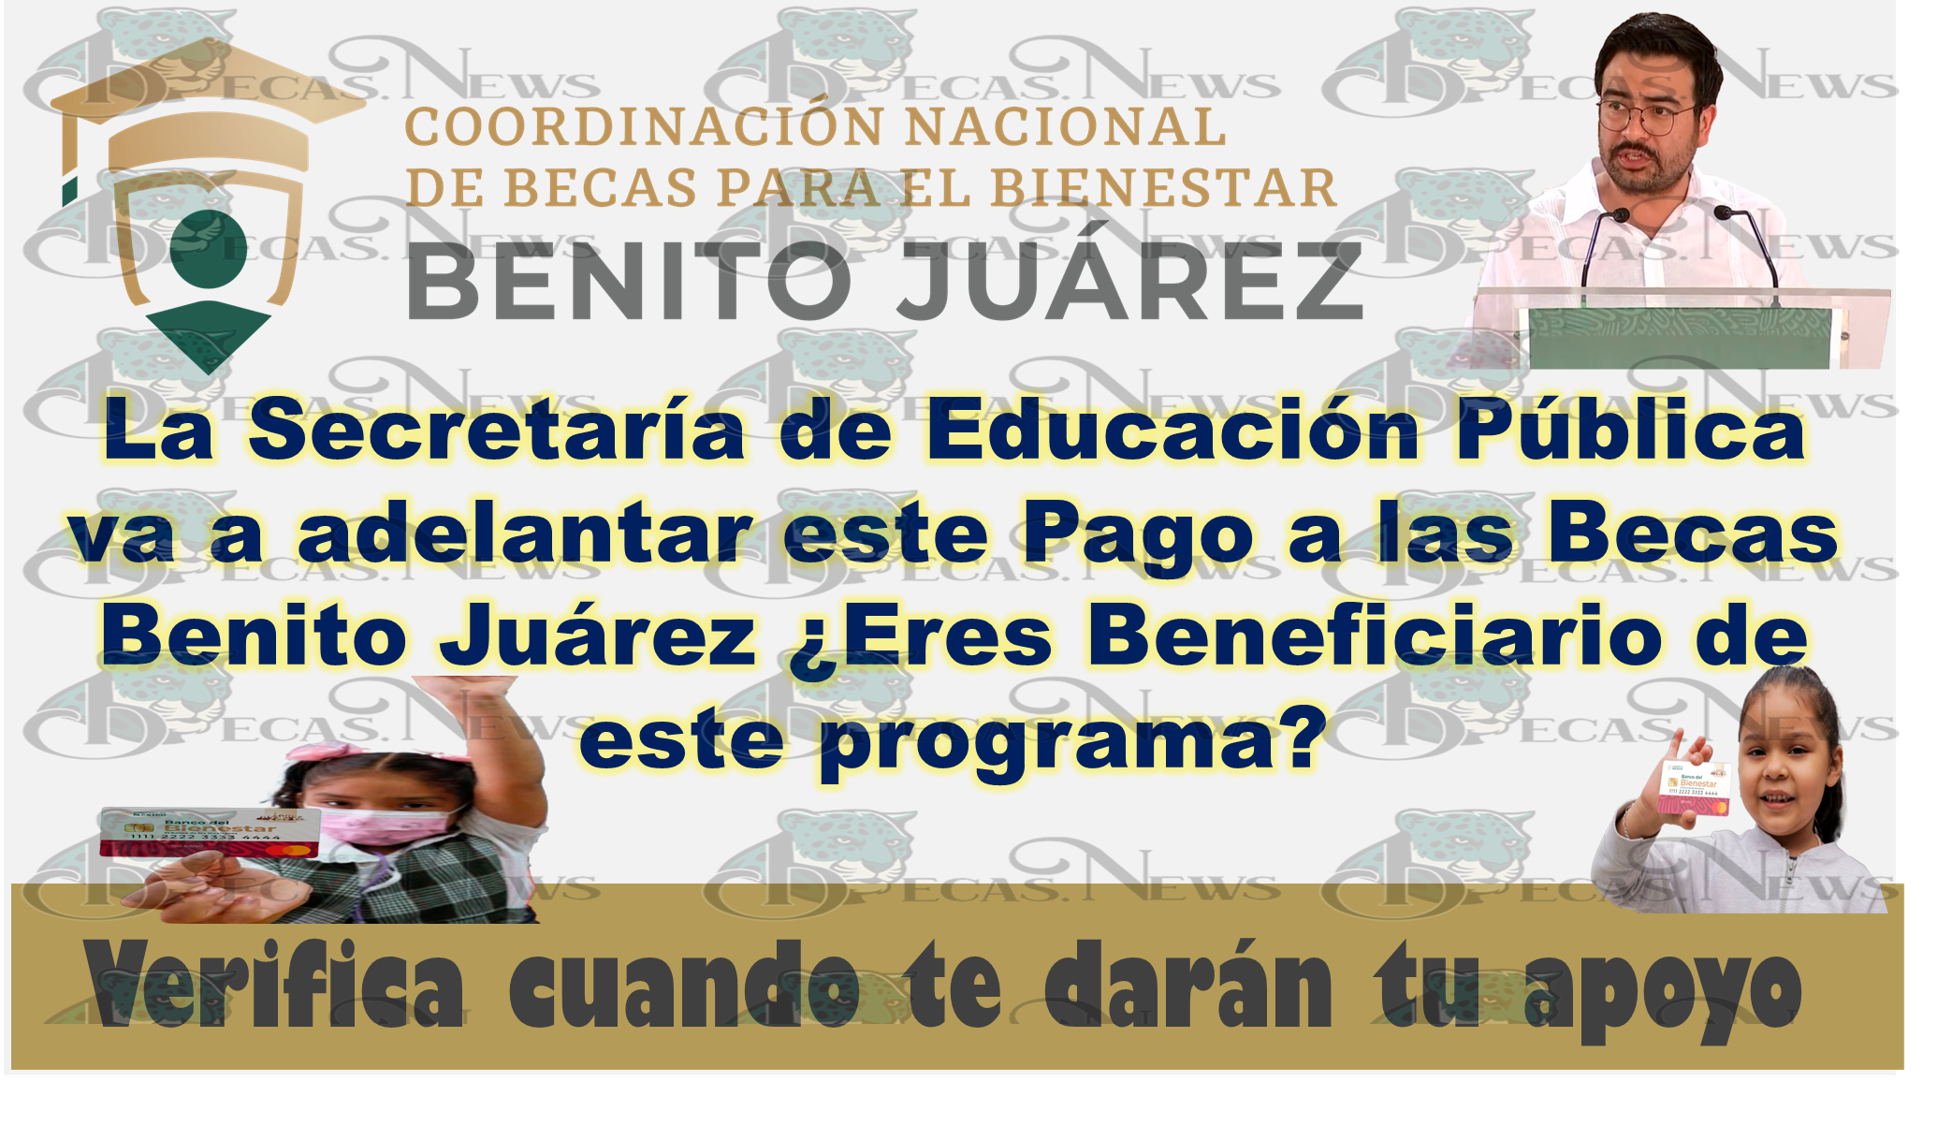 La Secretaría de Educación Pública va a adelantar este Pago a las Becas Benito Juárez ¿Eres Beneficiario de este programa? Verifica cuando te darán tu apoyo